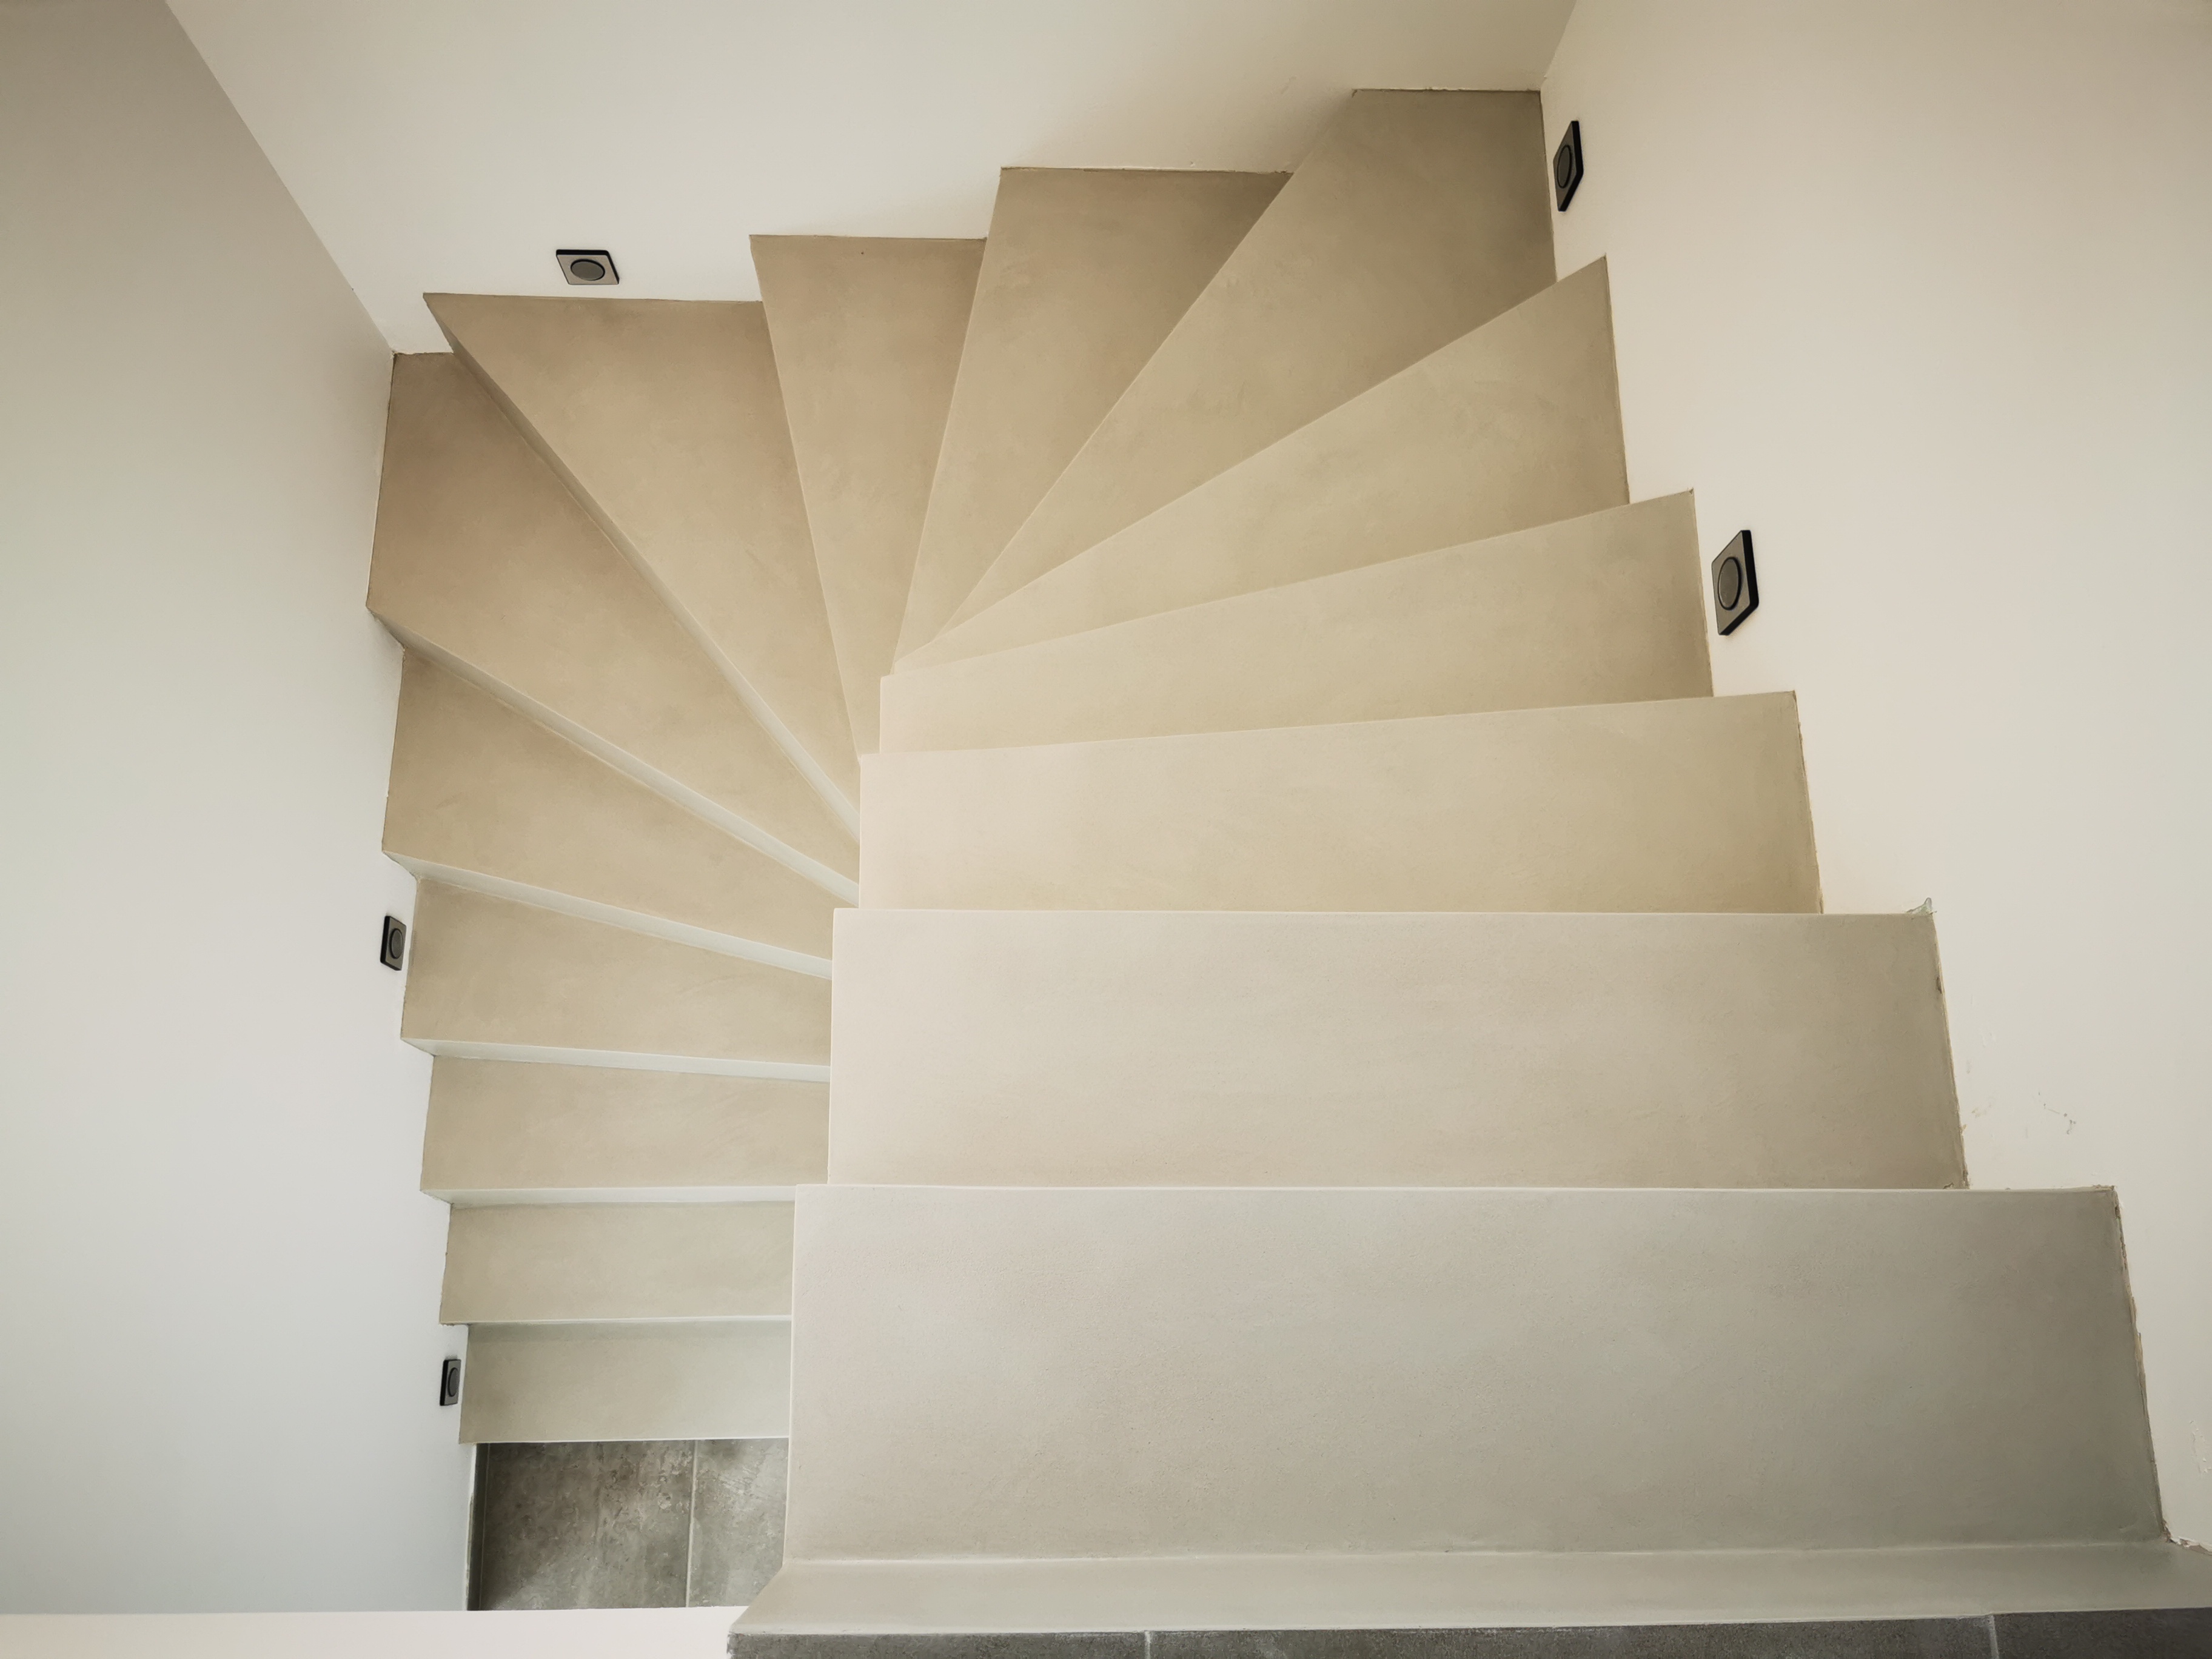 décoration marches d'un escalier à paillasse en béton ciré vernis mat couleur poivre blanc A Saint-Médard proche de Bordeaux en Aquitaine pour un constructeur